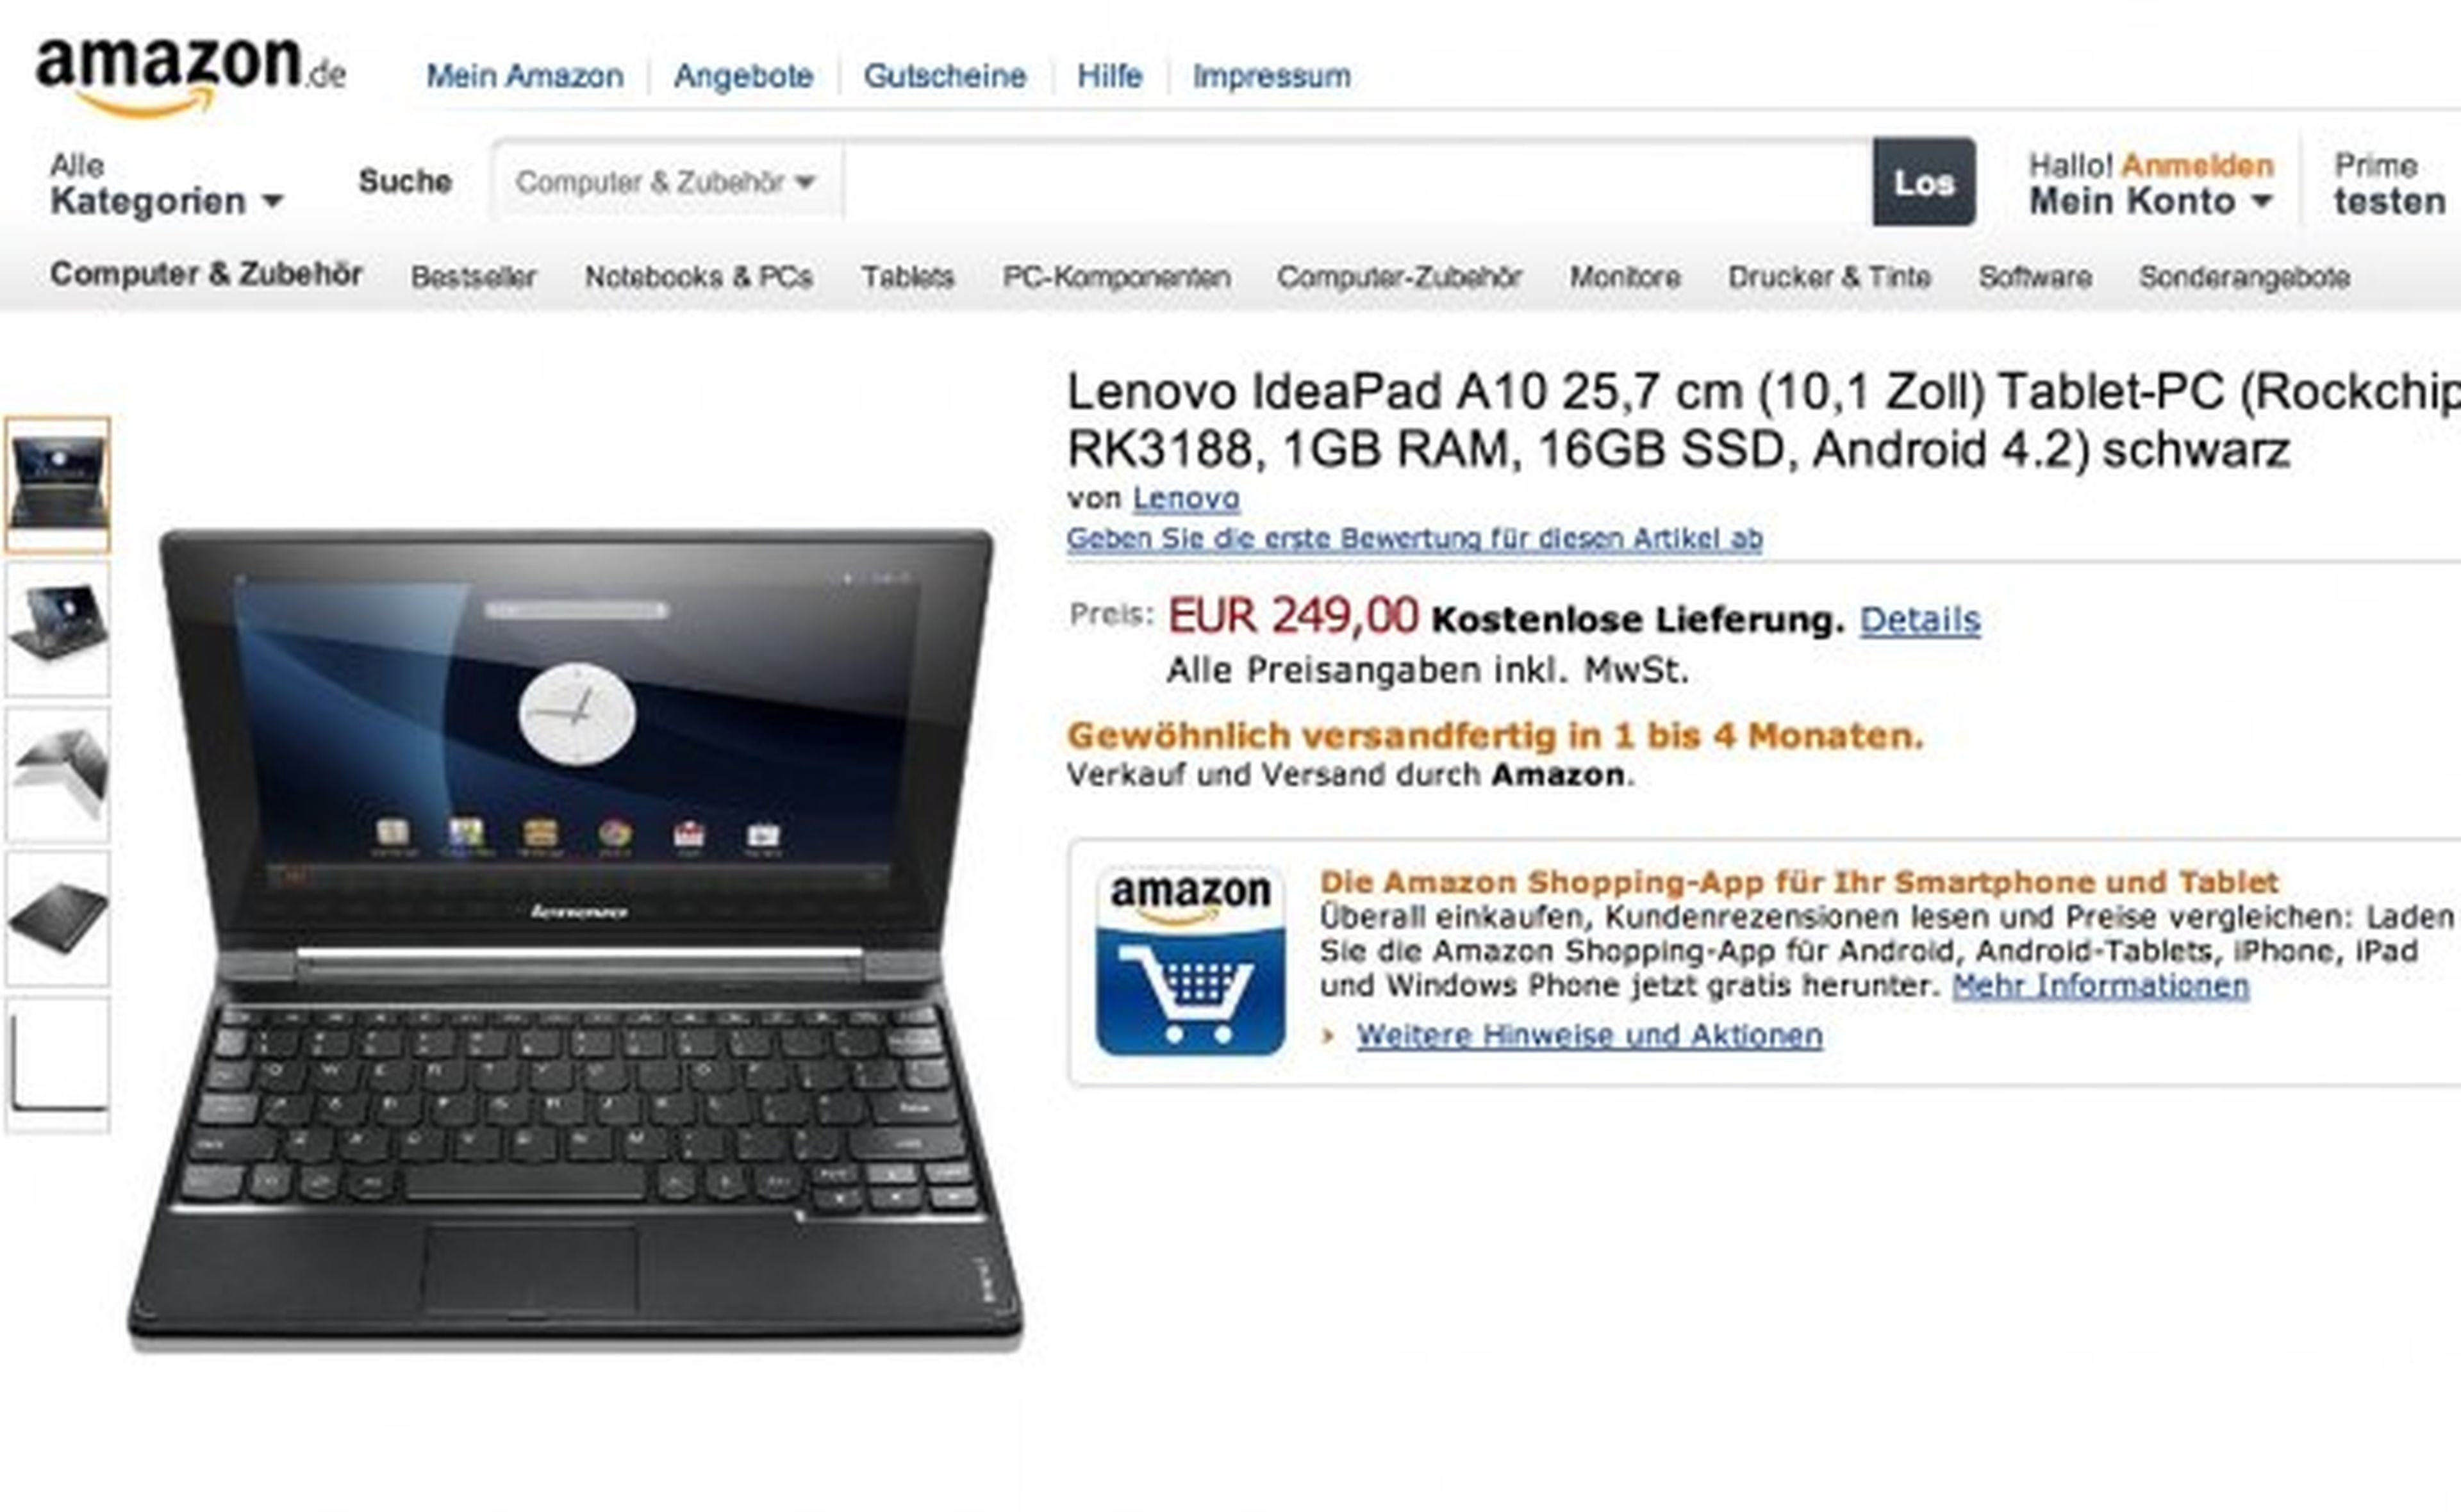 Amazon Alemania ofrece la IdeaTab A10 por 250 euros